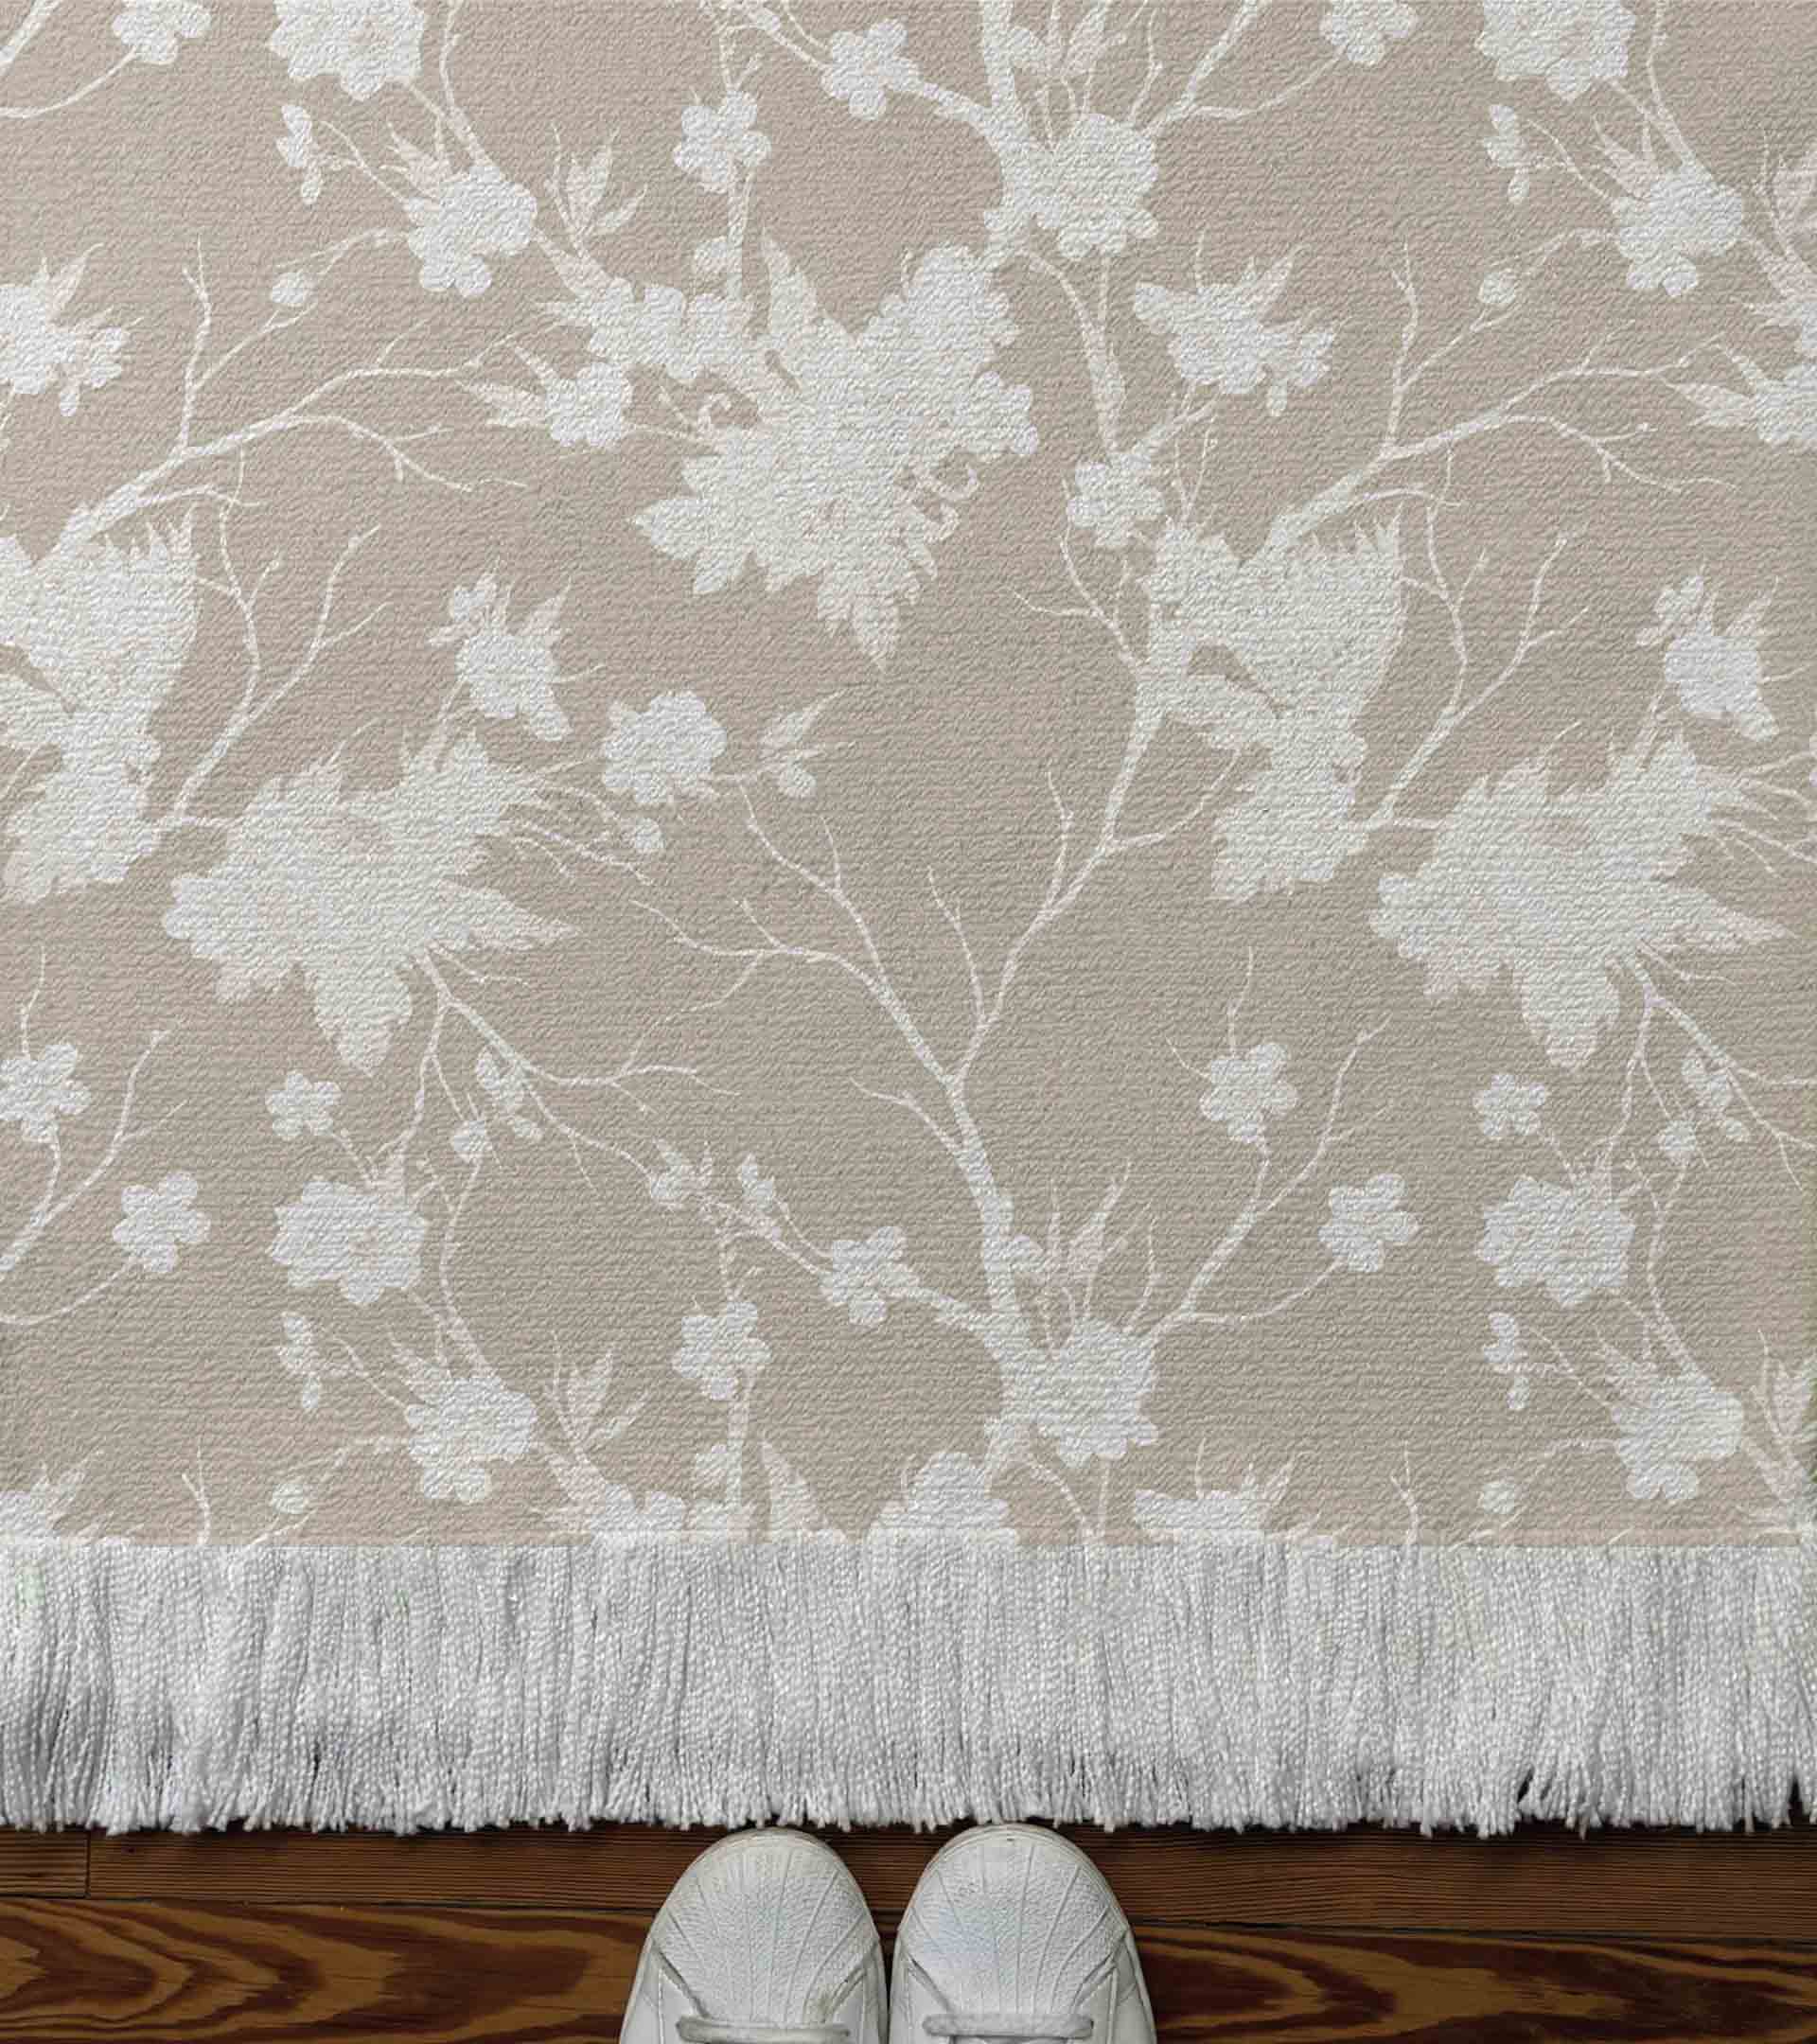 Alfombra tejida con diseño botanico con florones de color blanco y fondo beige